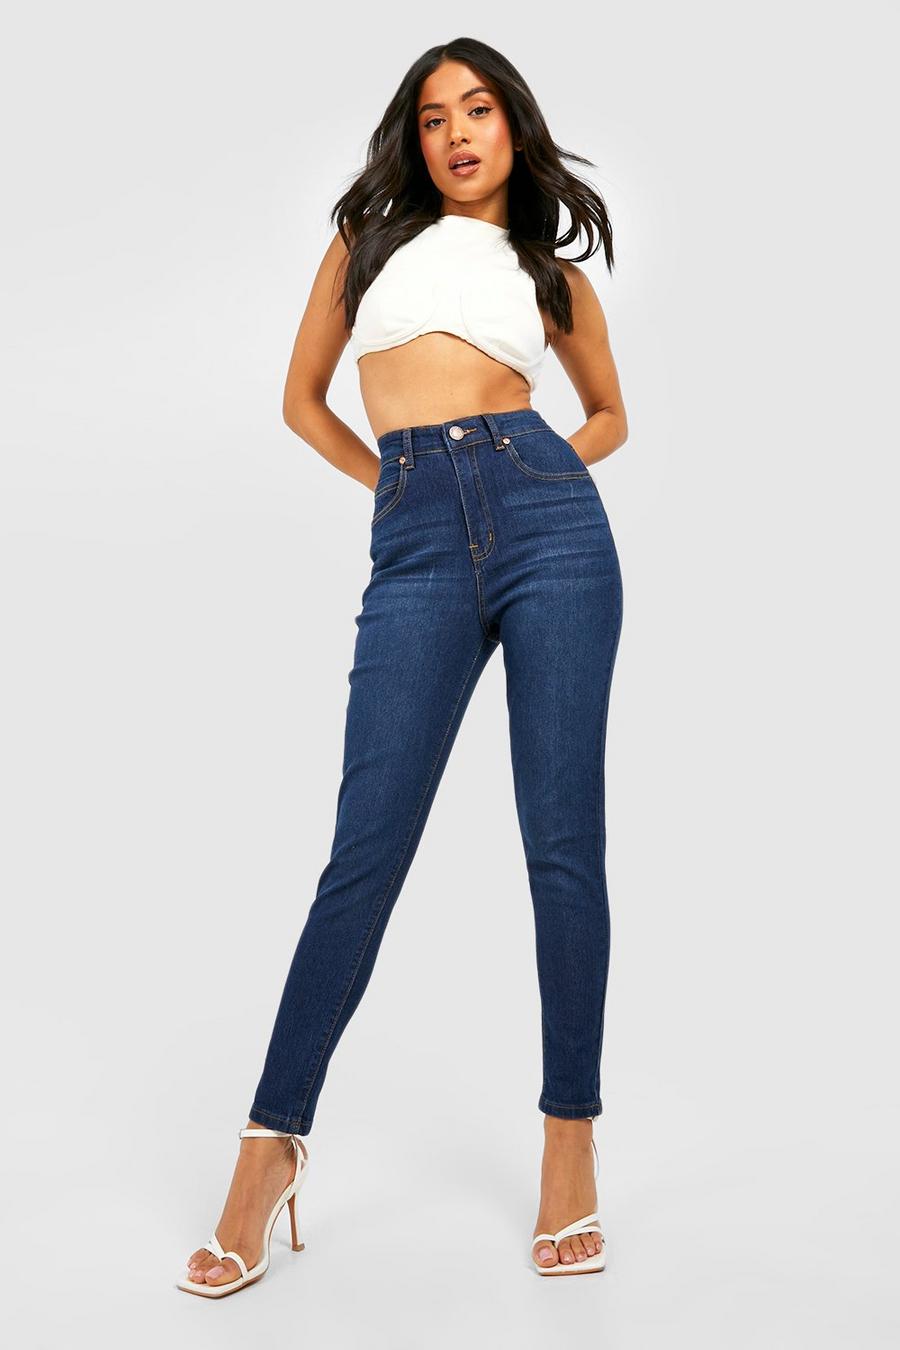 Indigo Petite Skinny jeans i femficksmodell med hög midja